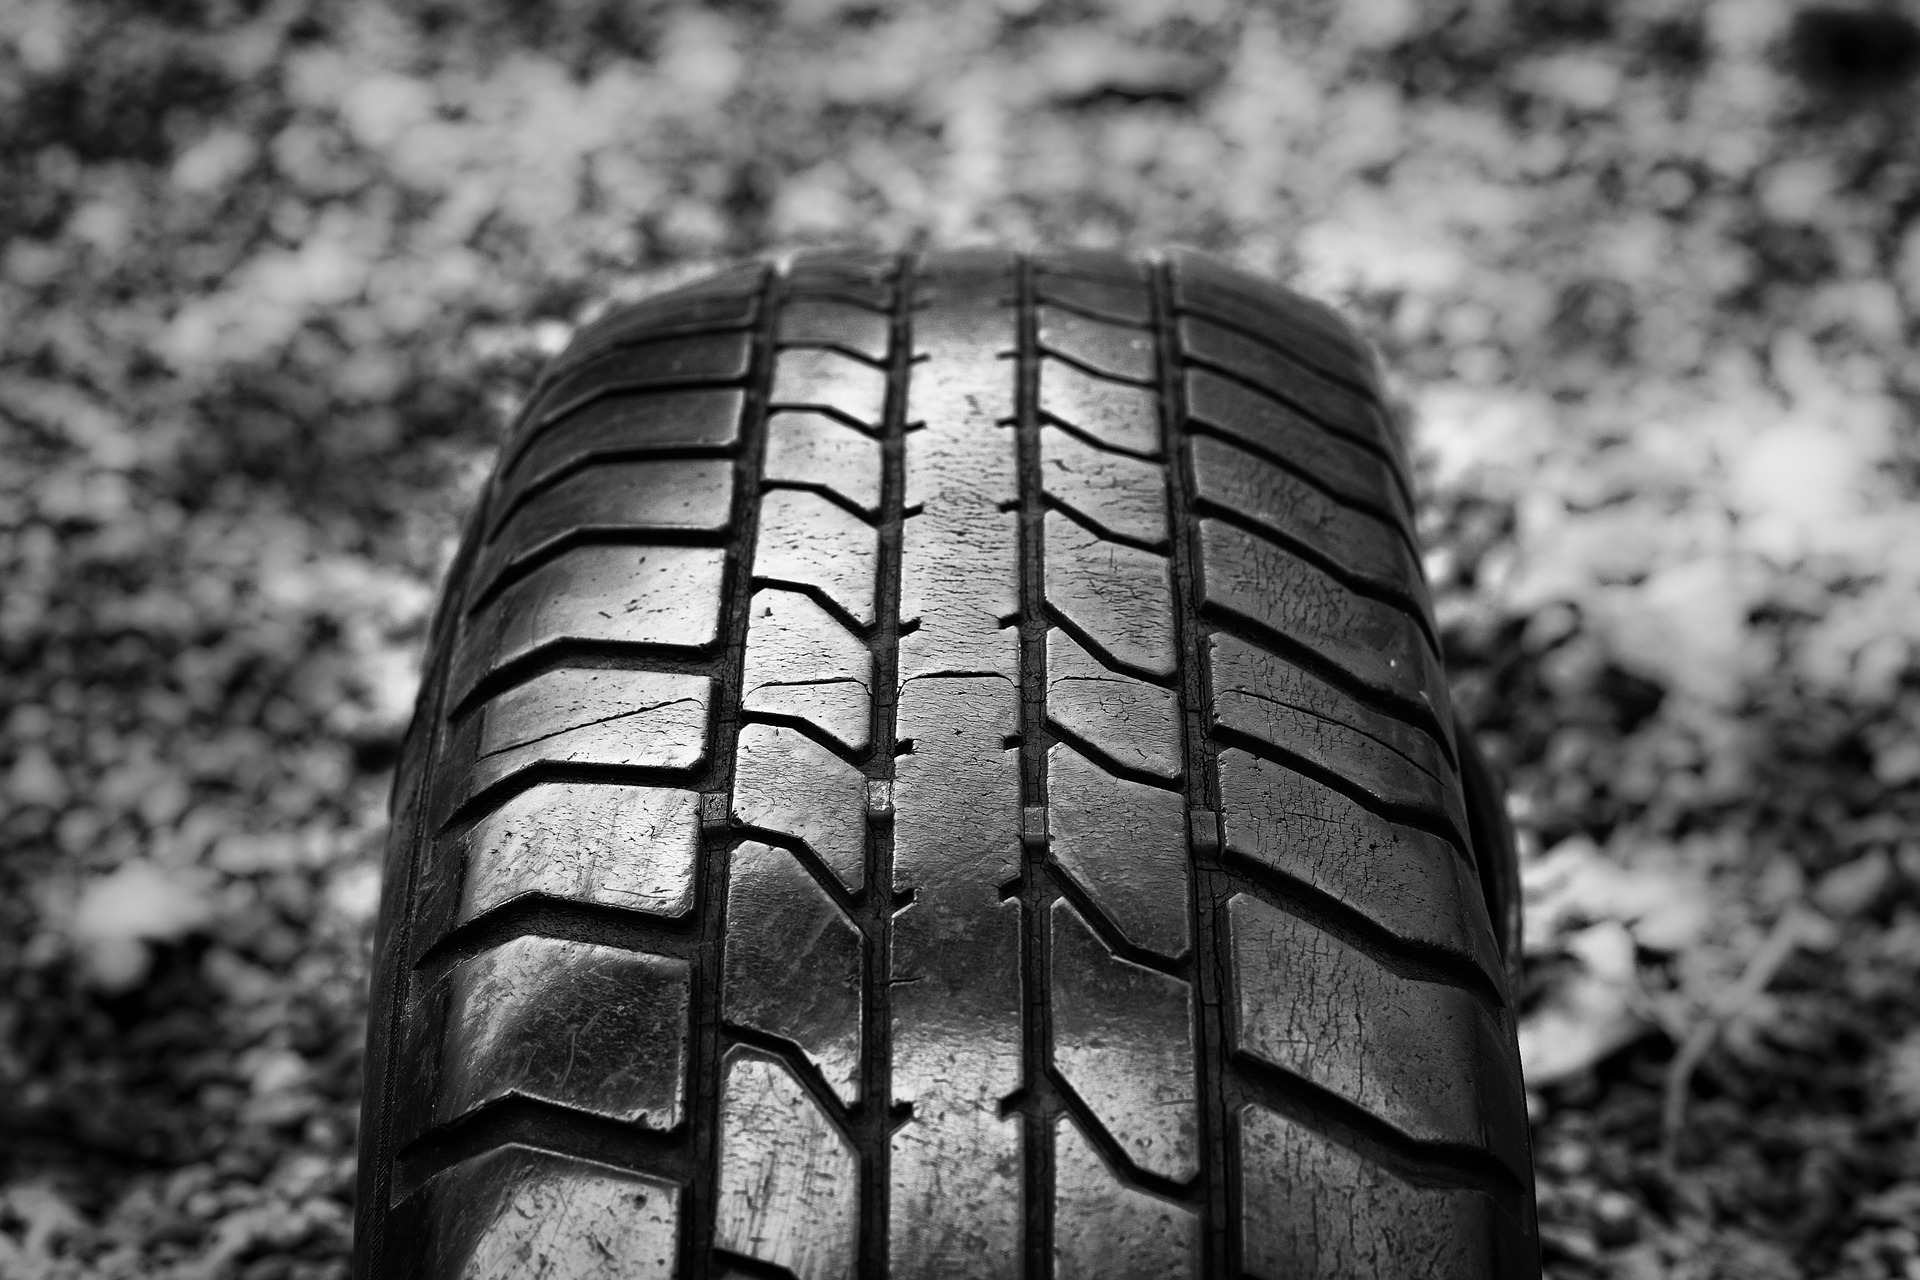 foto de um pneu contra um chão de pedregulhos - imagem em preto e branco